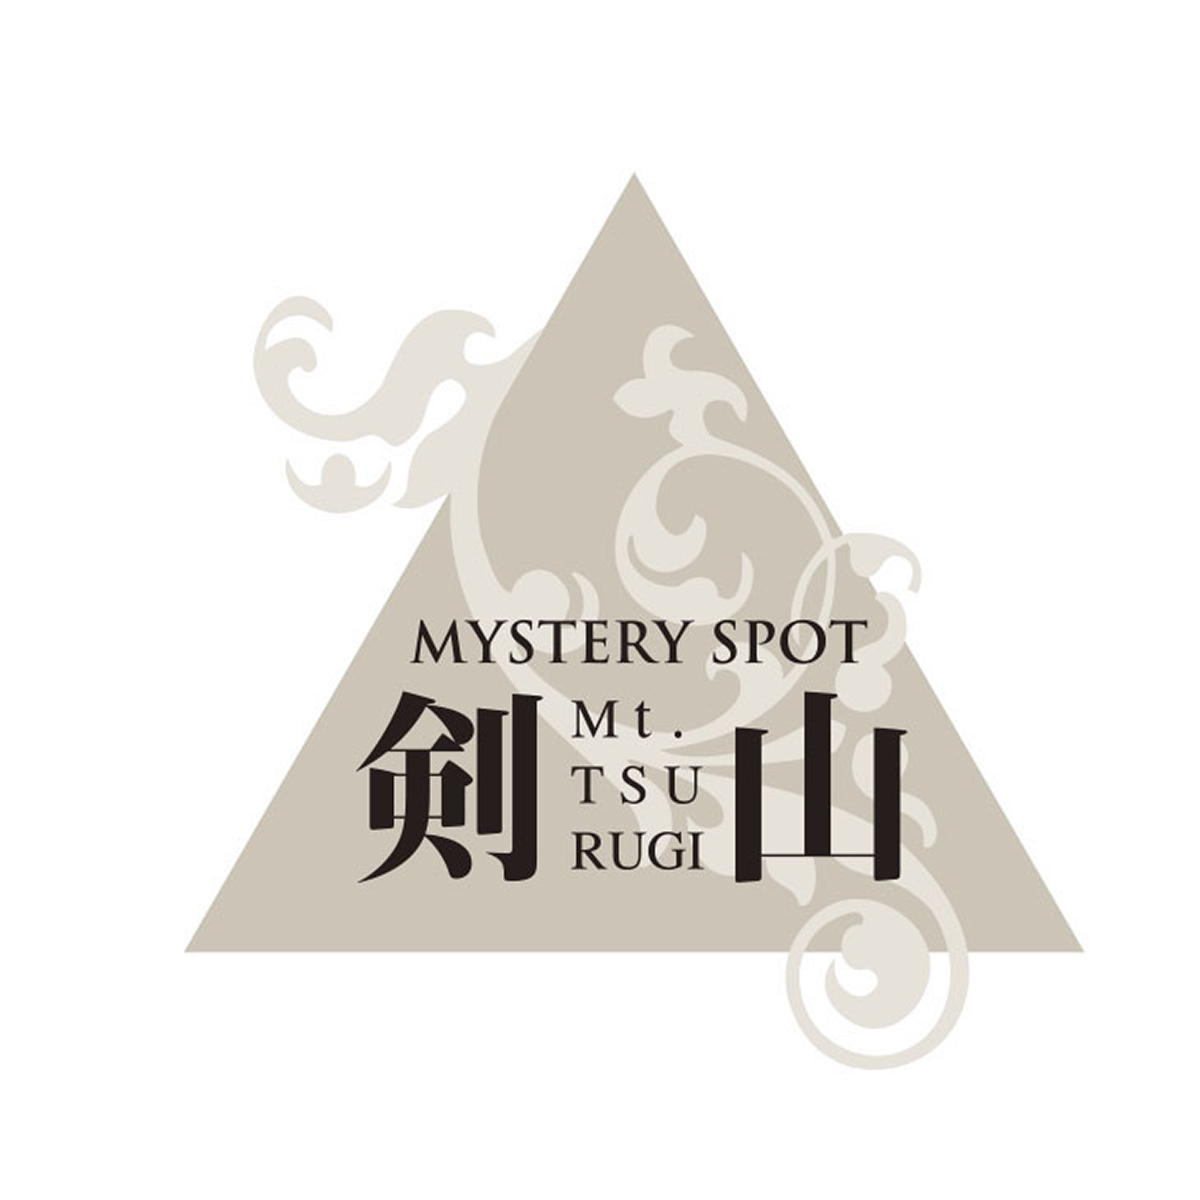 剣山 古代ミステリーと神秘の世界 ロゴマーク